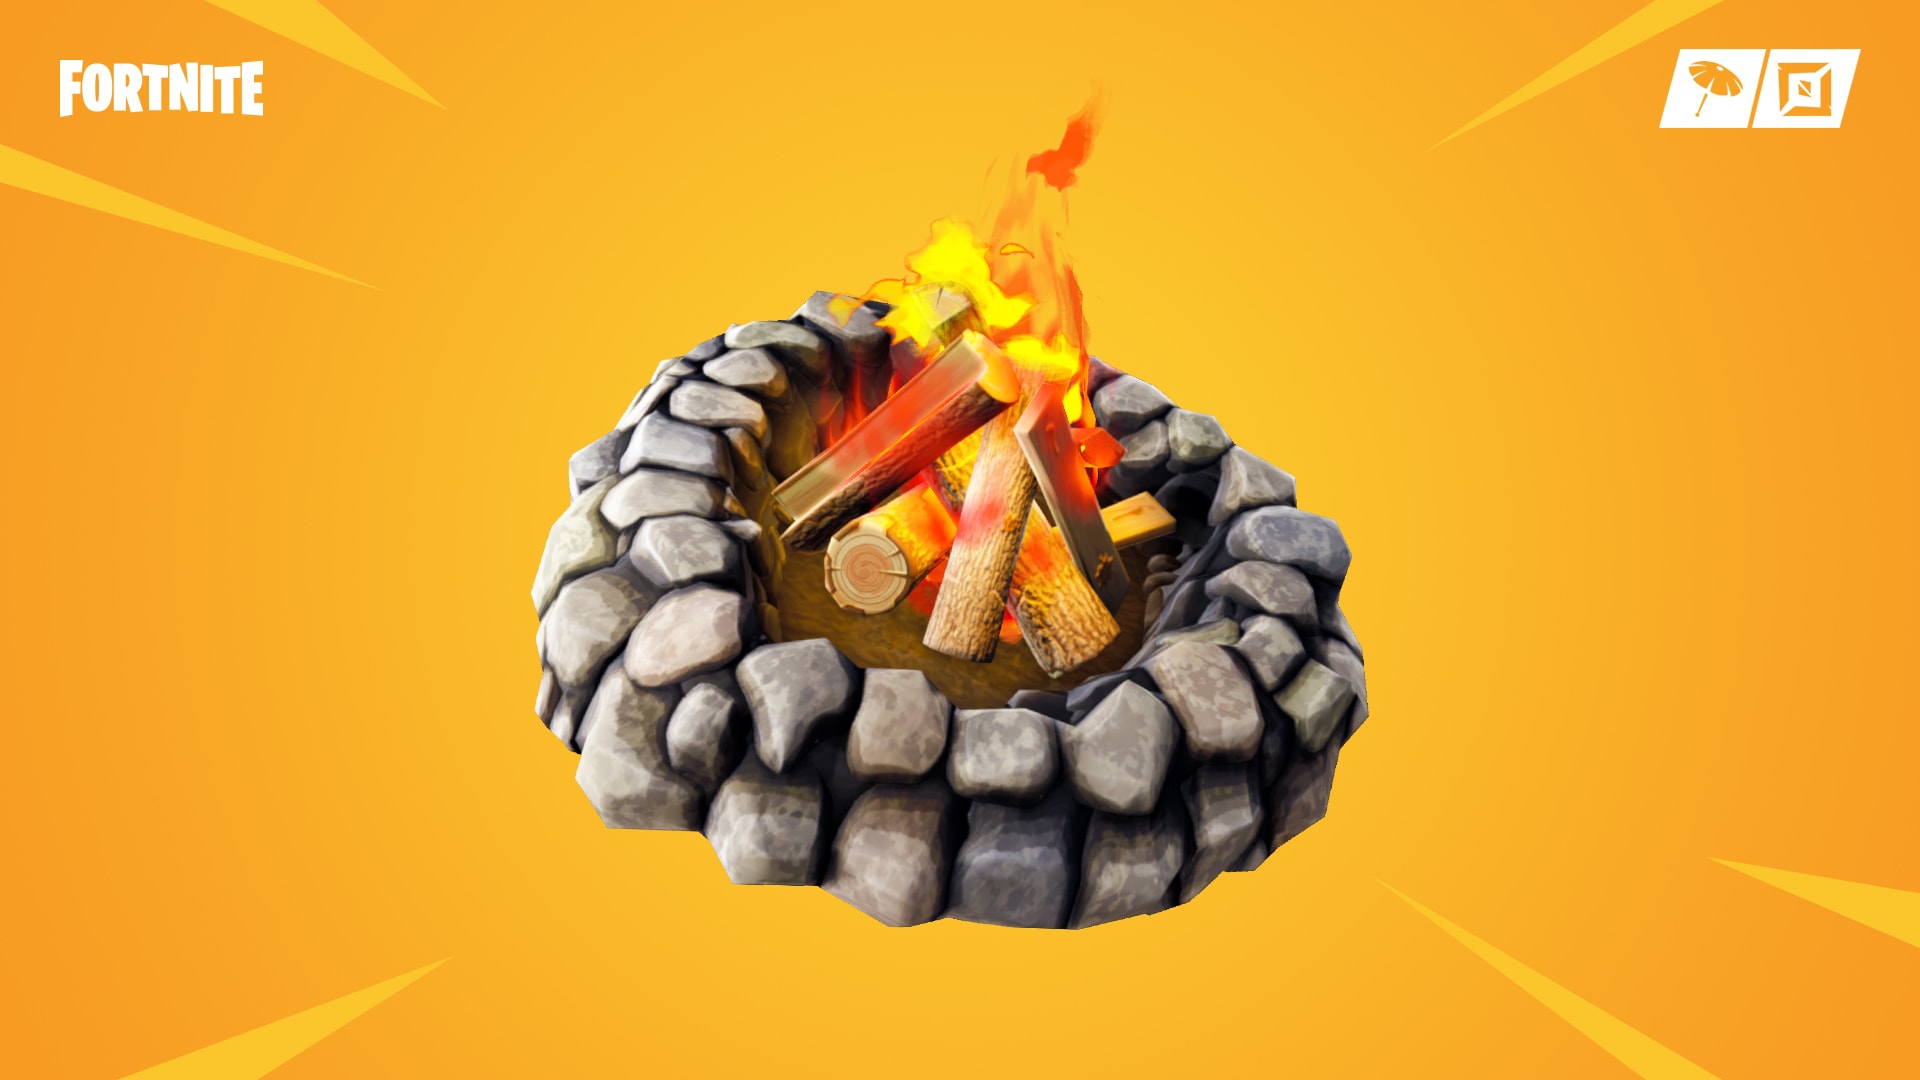 Fortnite campfire